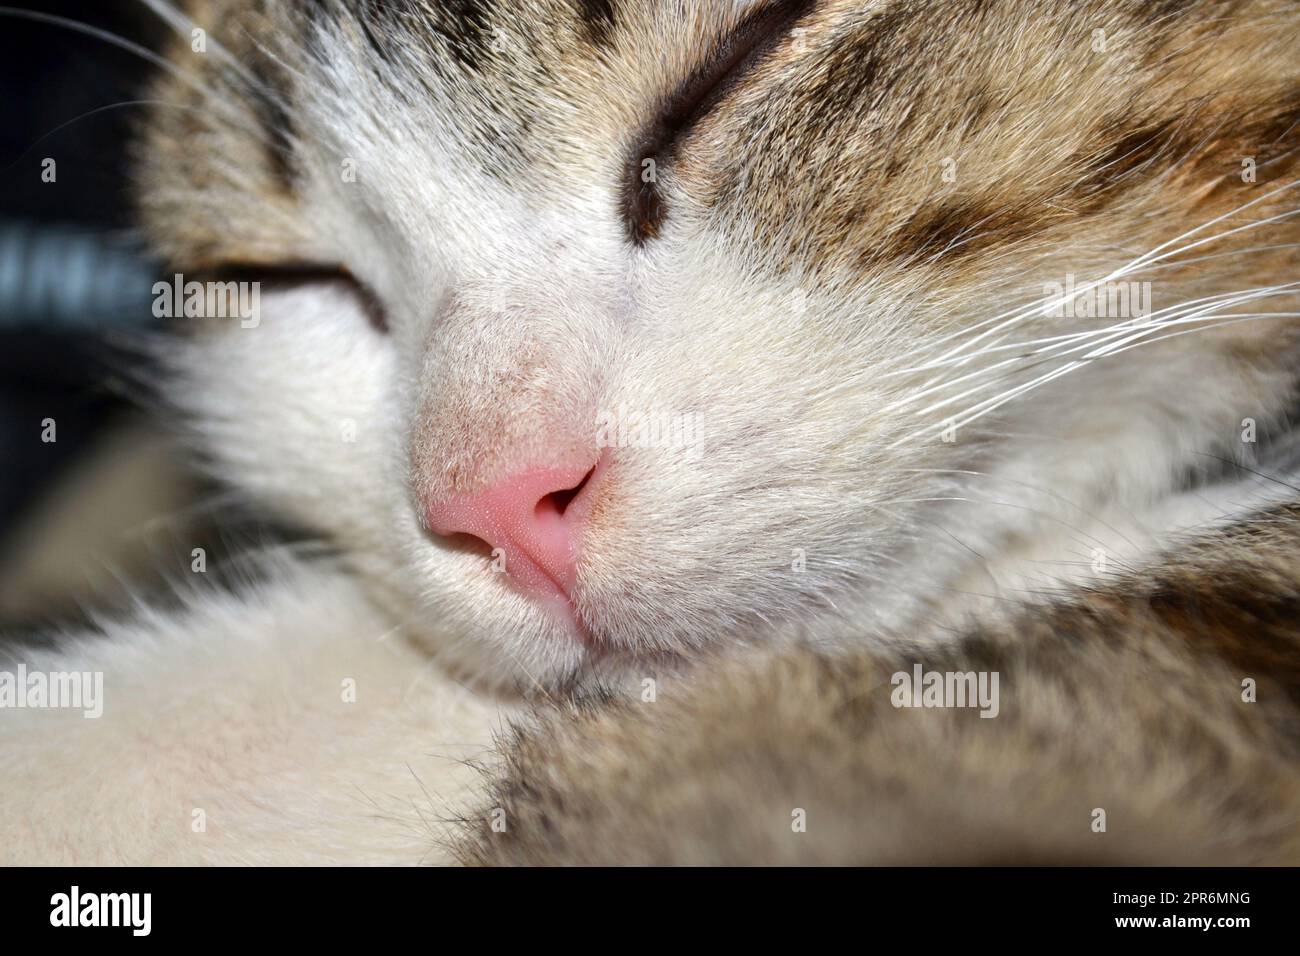 Cat pink nose close up Stock Photo